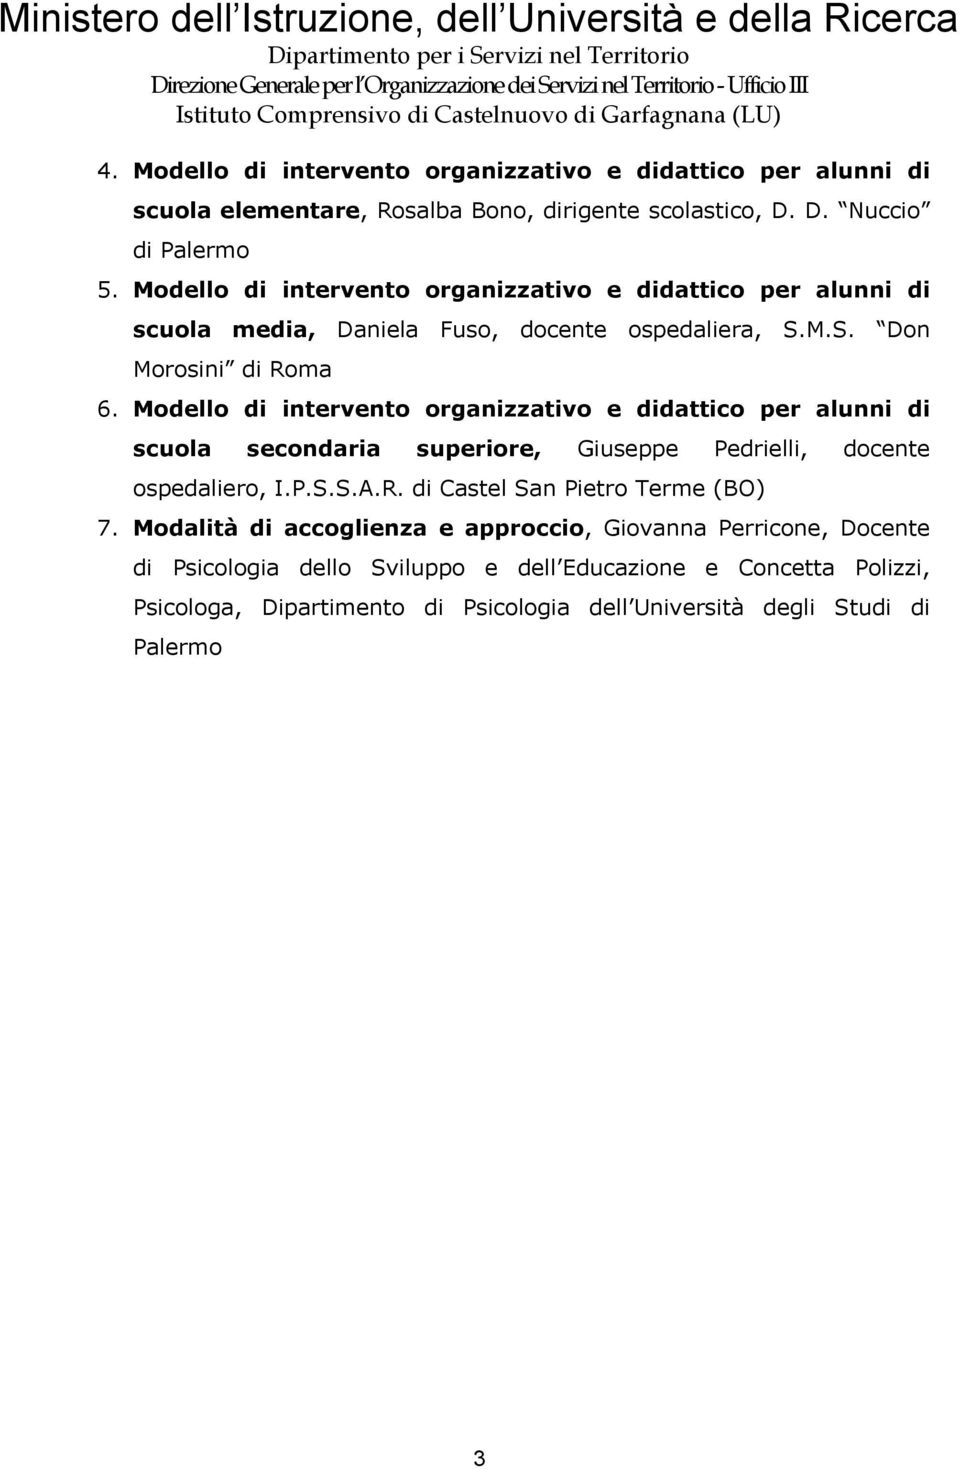 Modello di intervento organizzativo e didattico per alunni di scuola secondaria superiore, Giuseppe Pedrielli, docente ospedaliero, I.P.S.S.A.R.